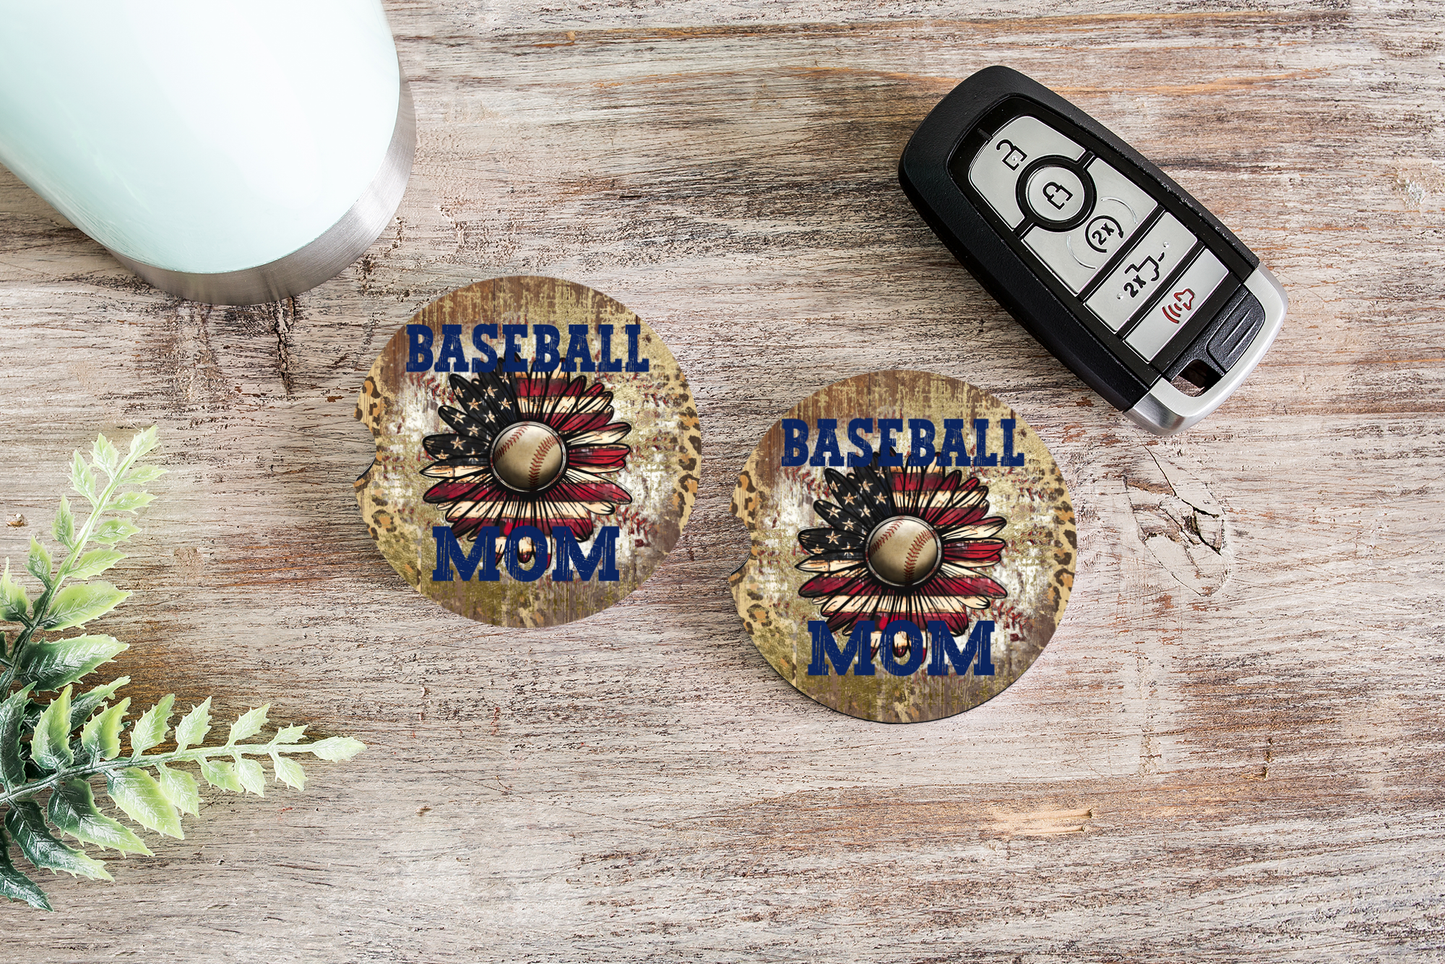 American Daisy Baseball Mom Car Coasters